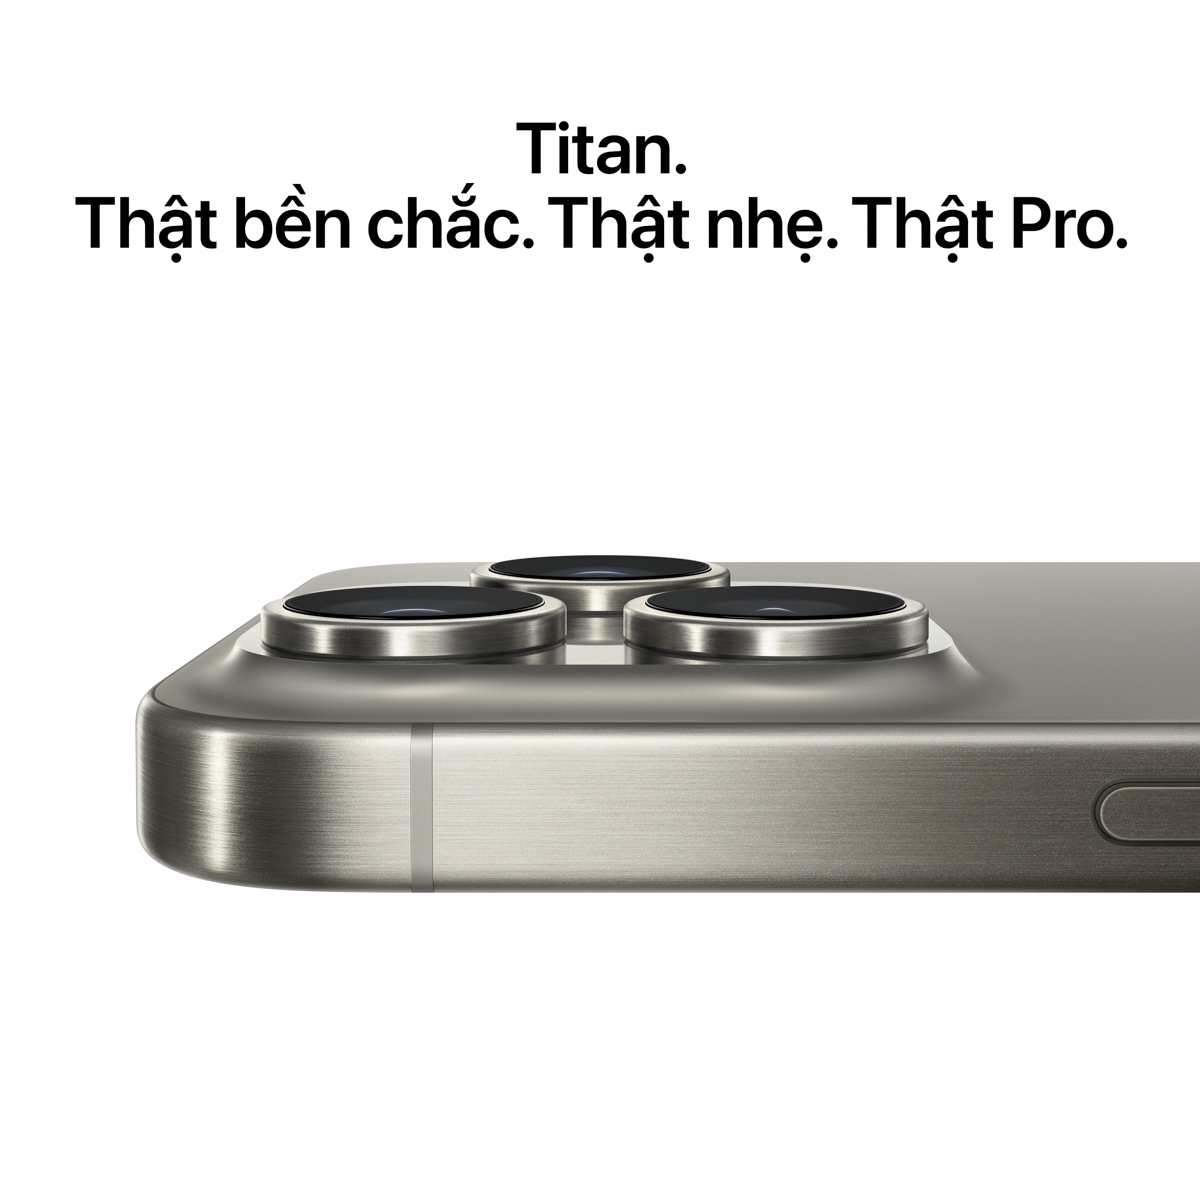 iPhone 15 Pro Max có khung viền titan. Nguồn ảnh: Apple